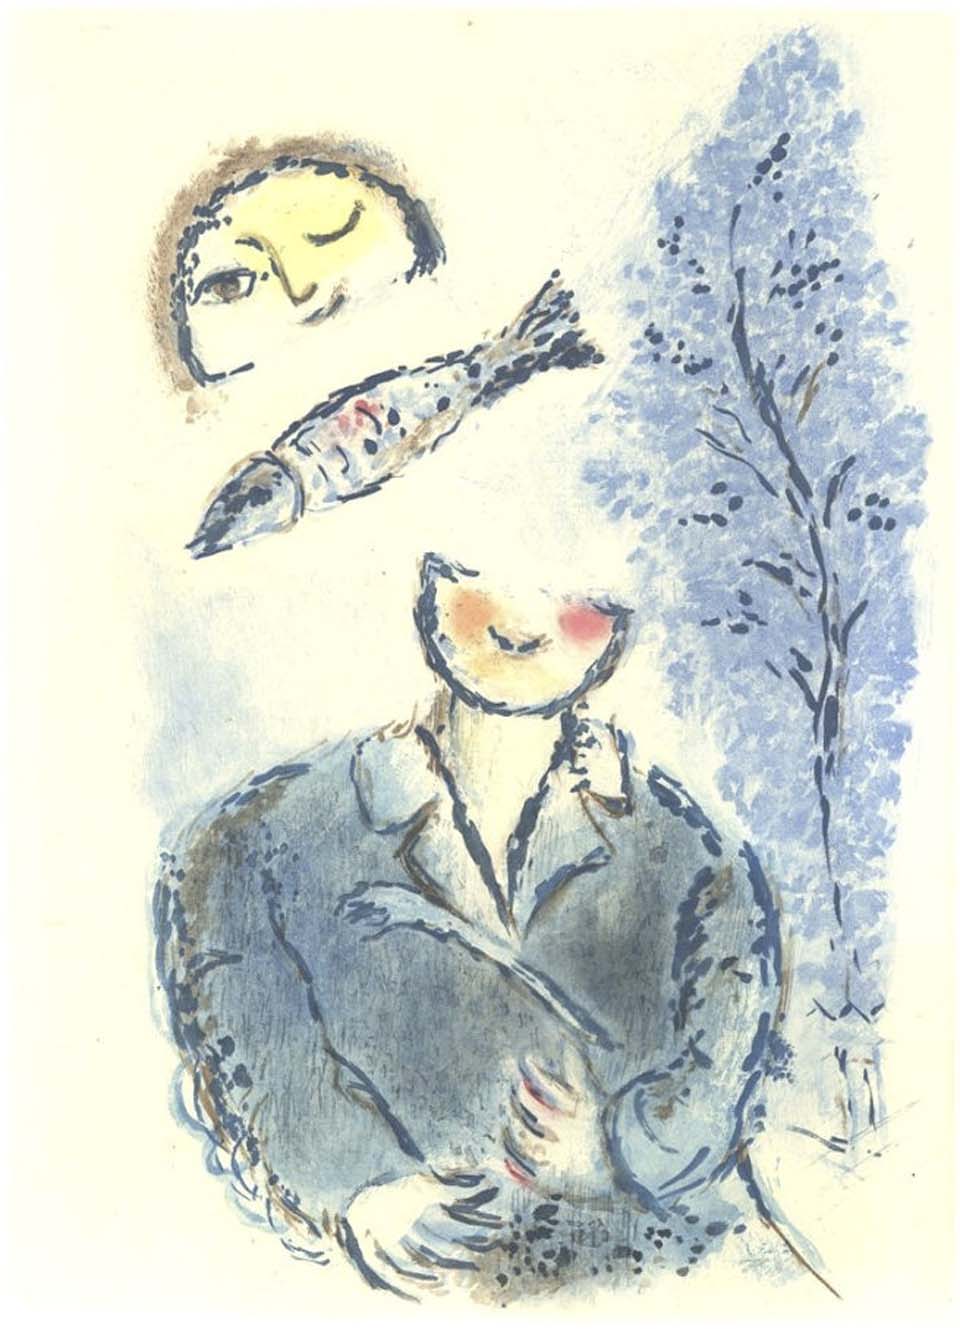 Литография Марка Шагала, представленная в галерее Альтман